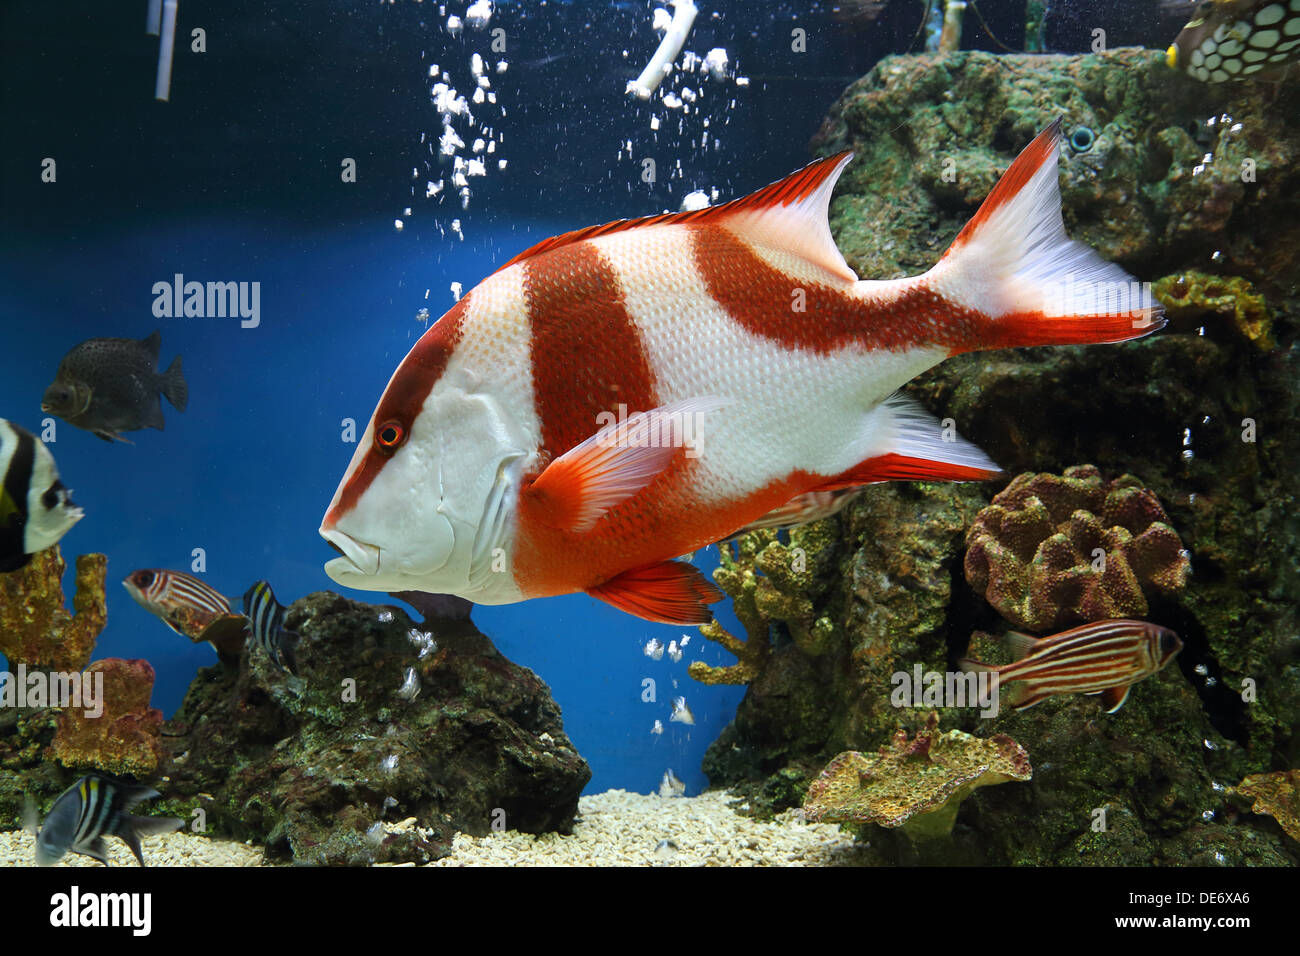 red emperor (Lutjanus sebae) in aquarium Stock Photo